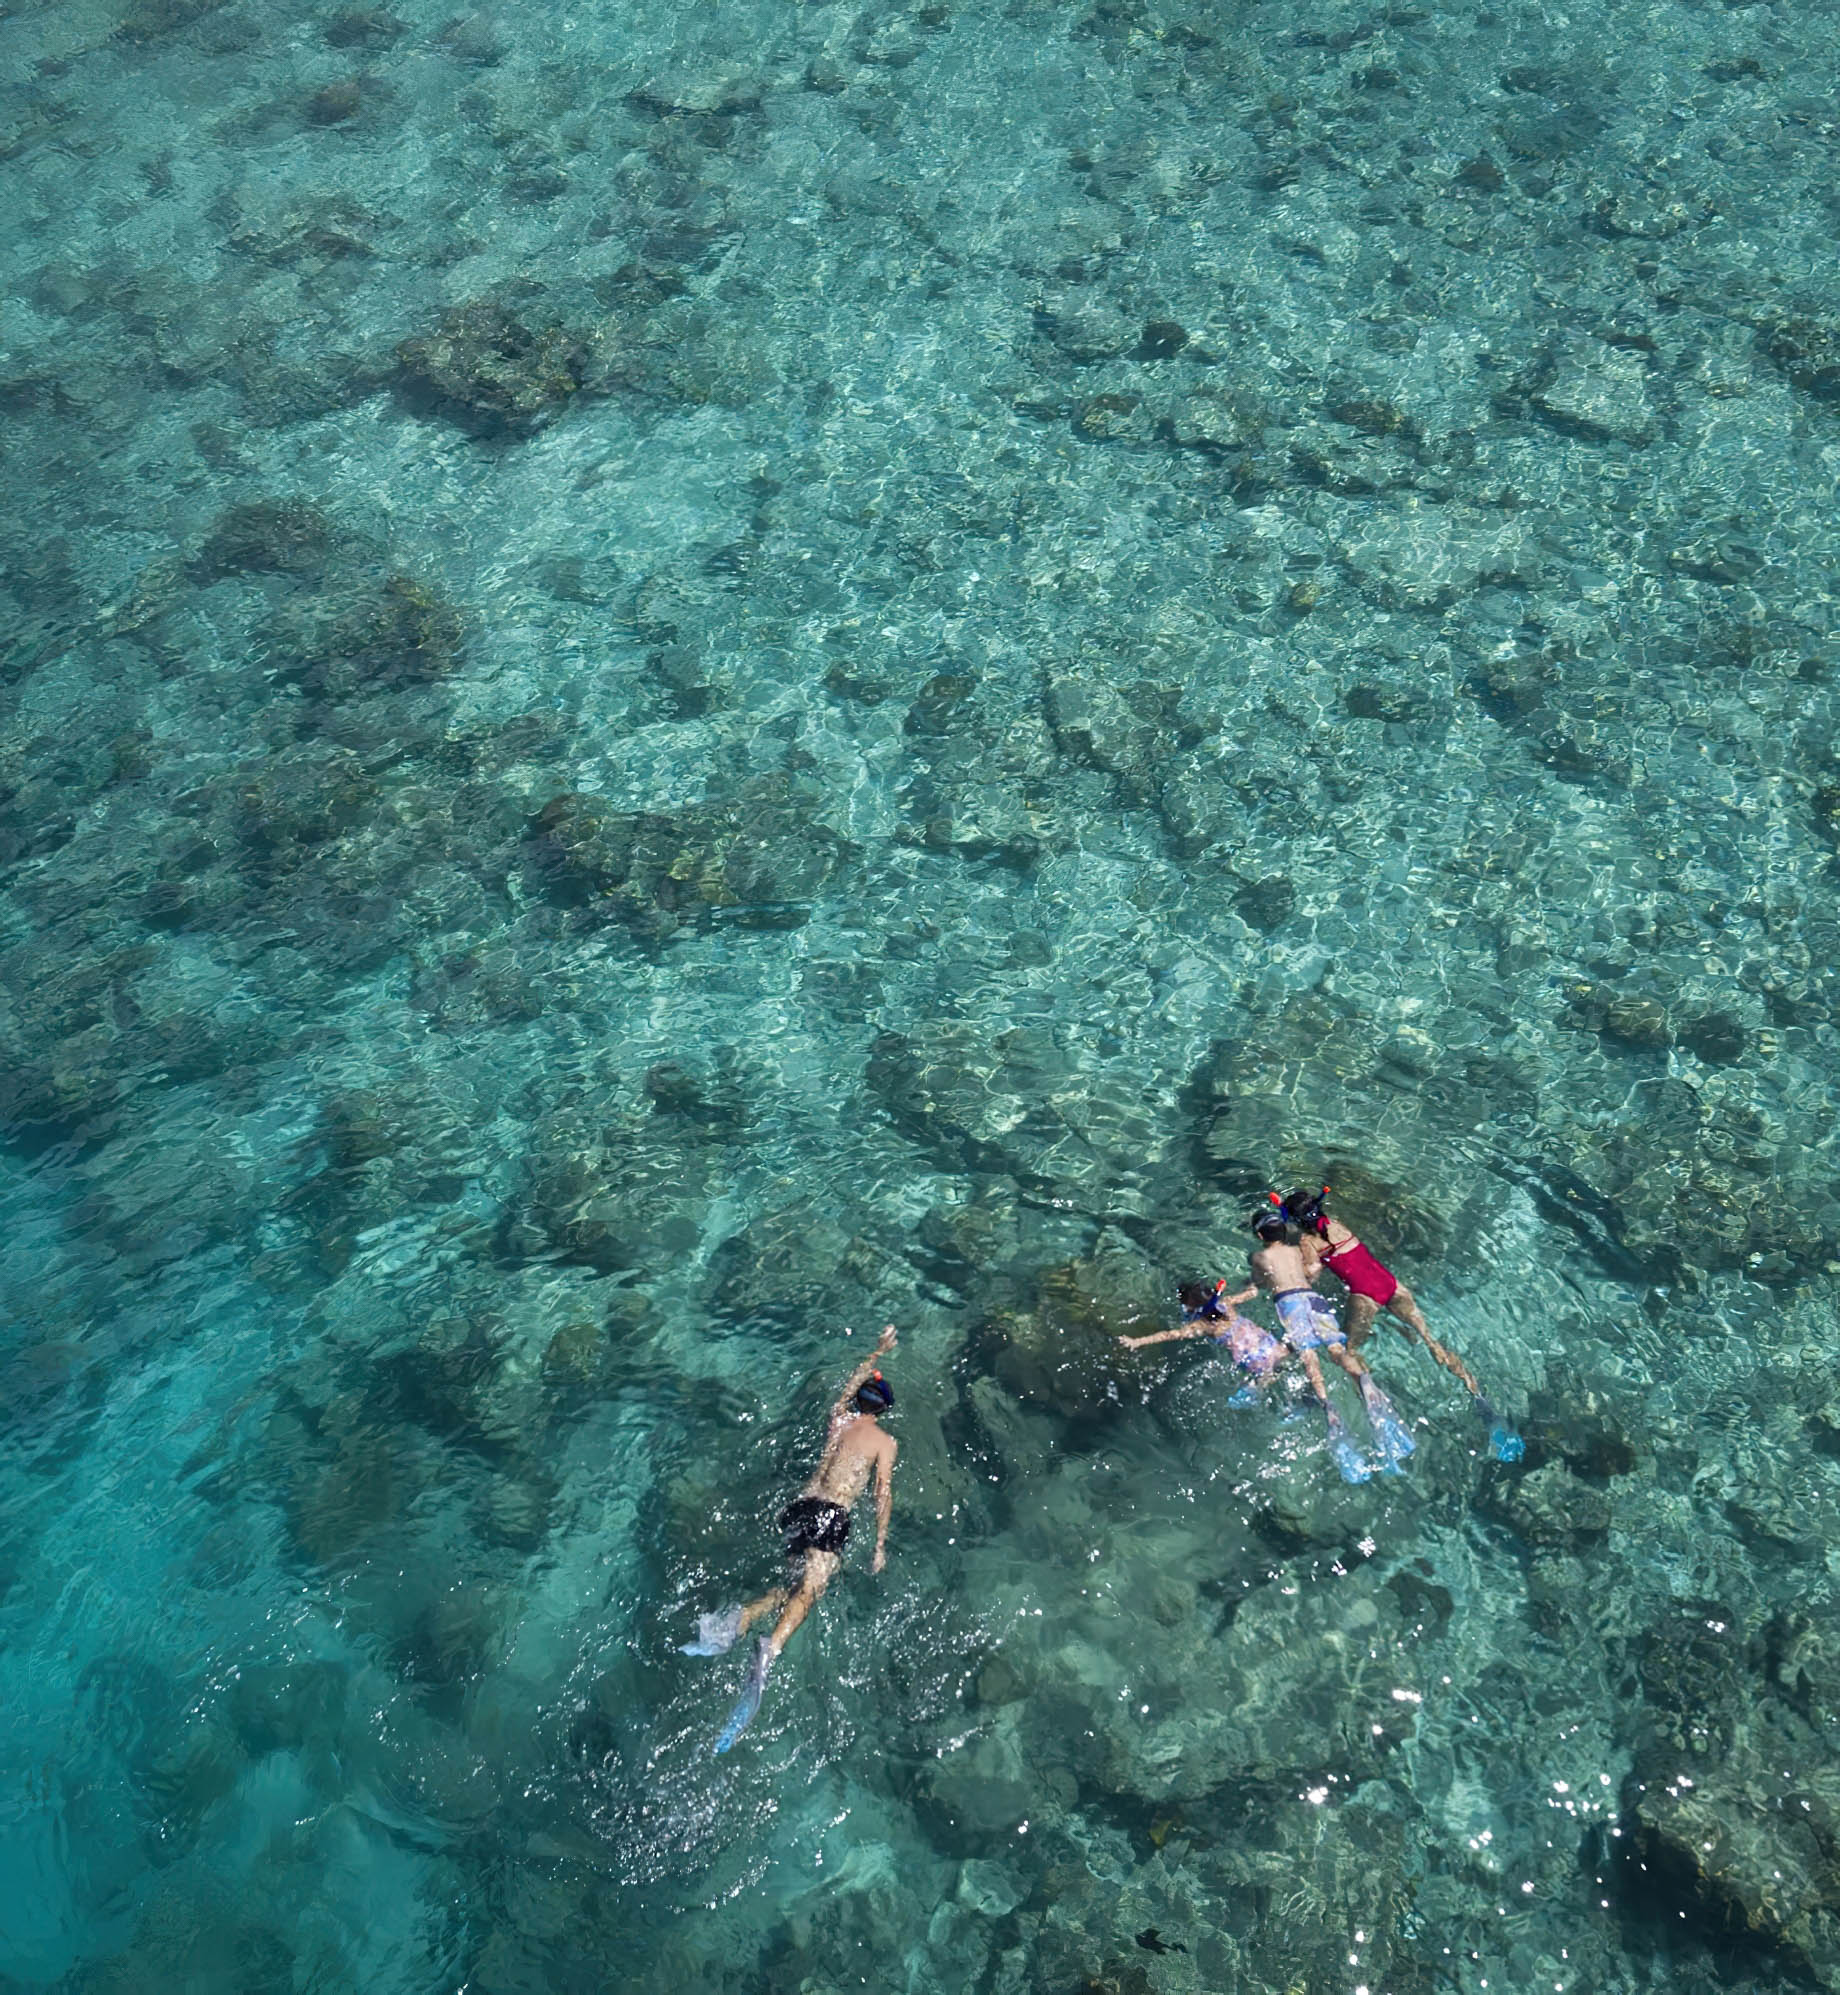 Anantara Thigu Maldives Resort - South Male Atoll, Maldives - Snorkeling